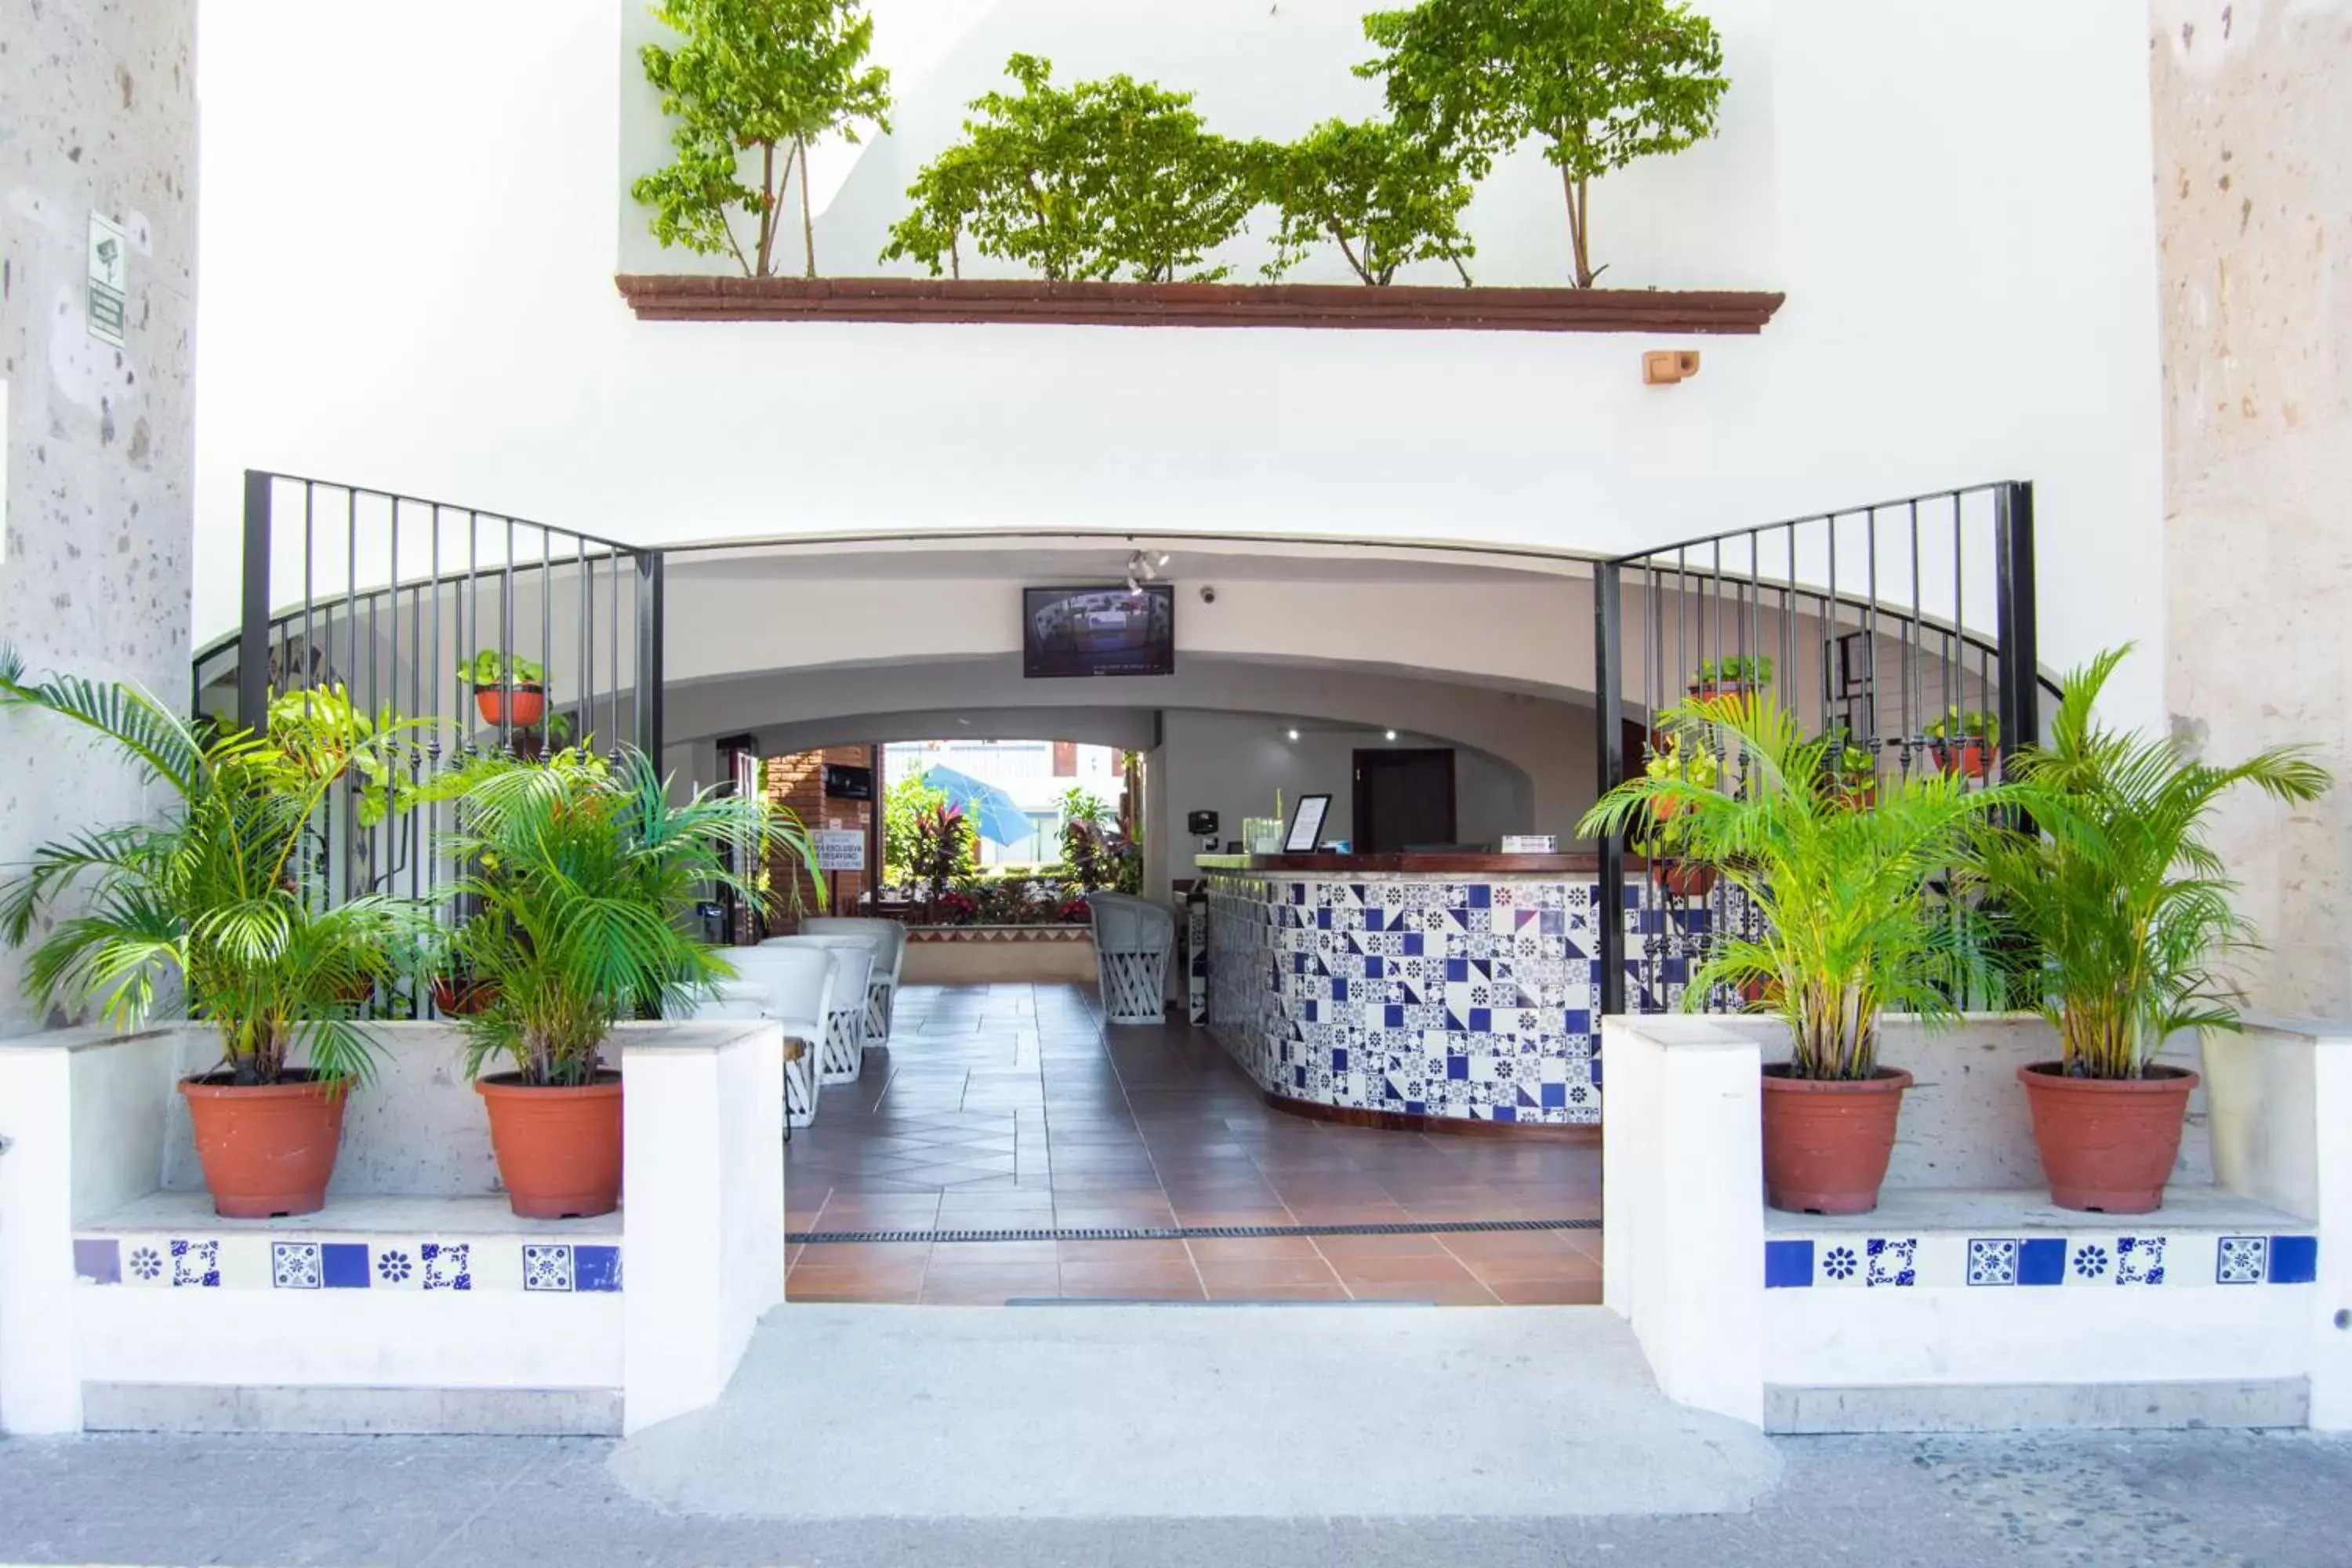 Facade/entrance in Hotel Hacienda Vallarta - Playa Las Glorias